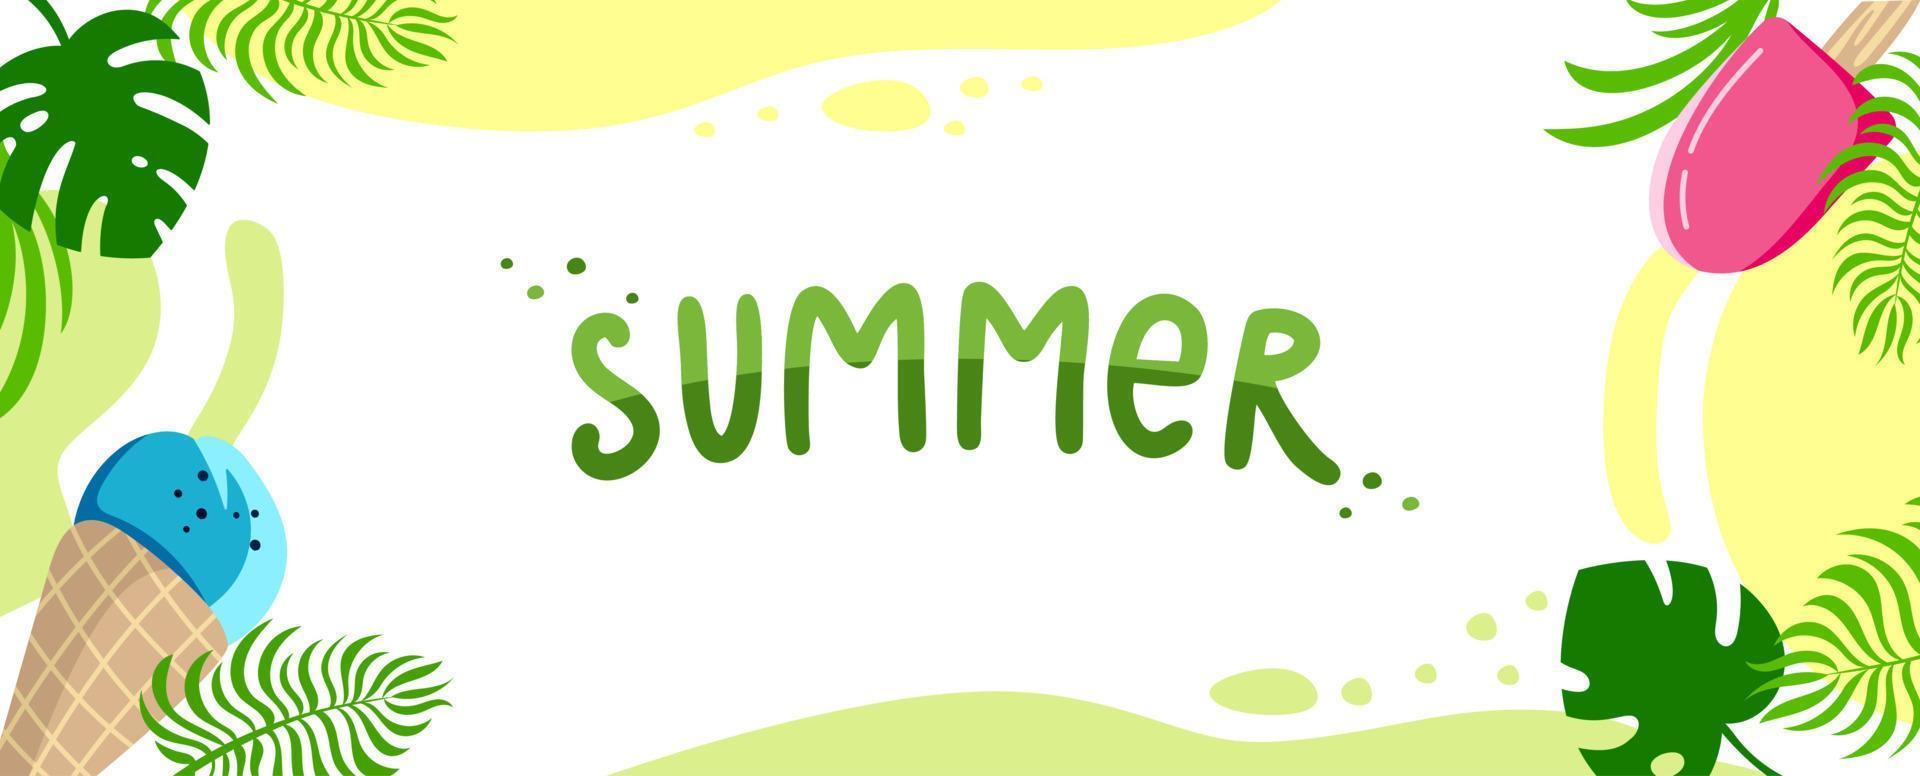 cabeçalho do site de fundo de verão banner de cartão postal horizontal colorido inscrição de férias olá ilustração vetorial de verão em estilo simples vetor